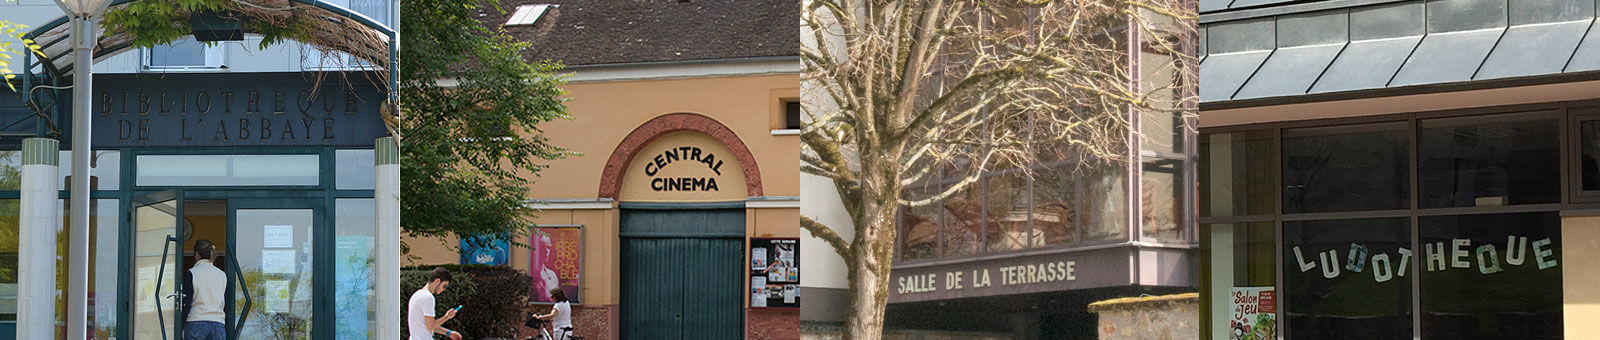 Equipements culturels de Gif-sur-Yvette.